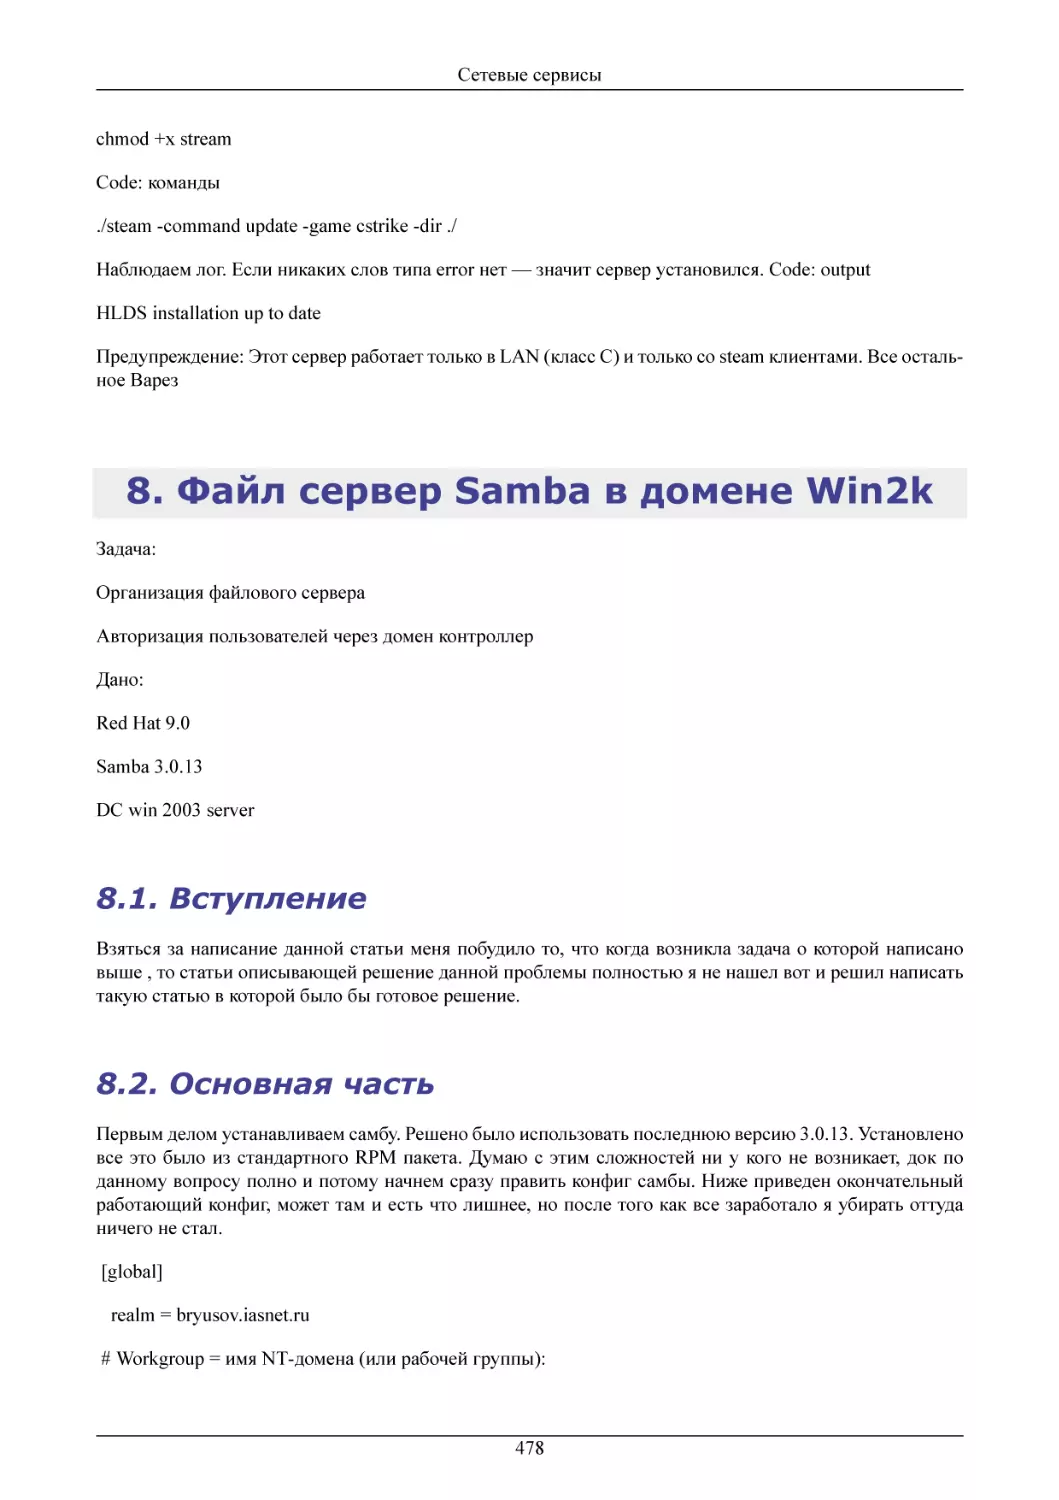 Файл сервер Samba в домене Win2k
Вступление
Основная часть